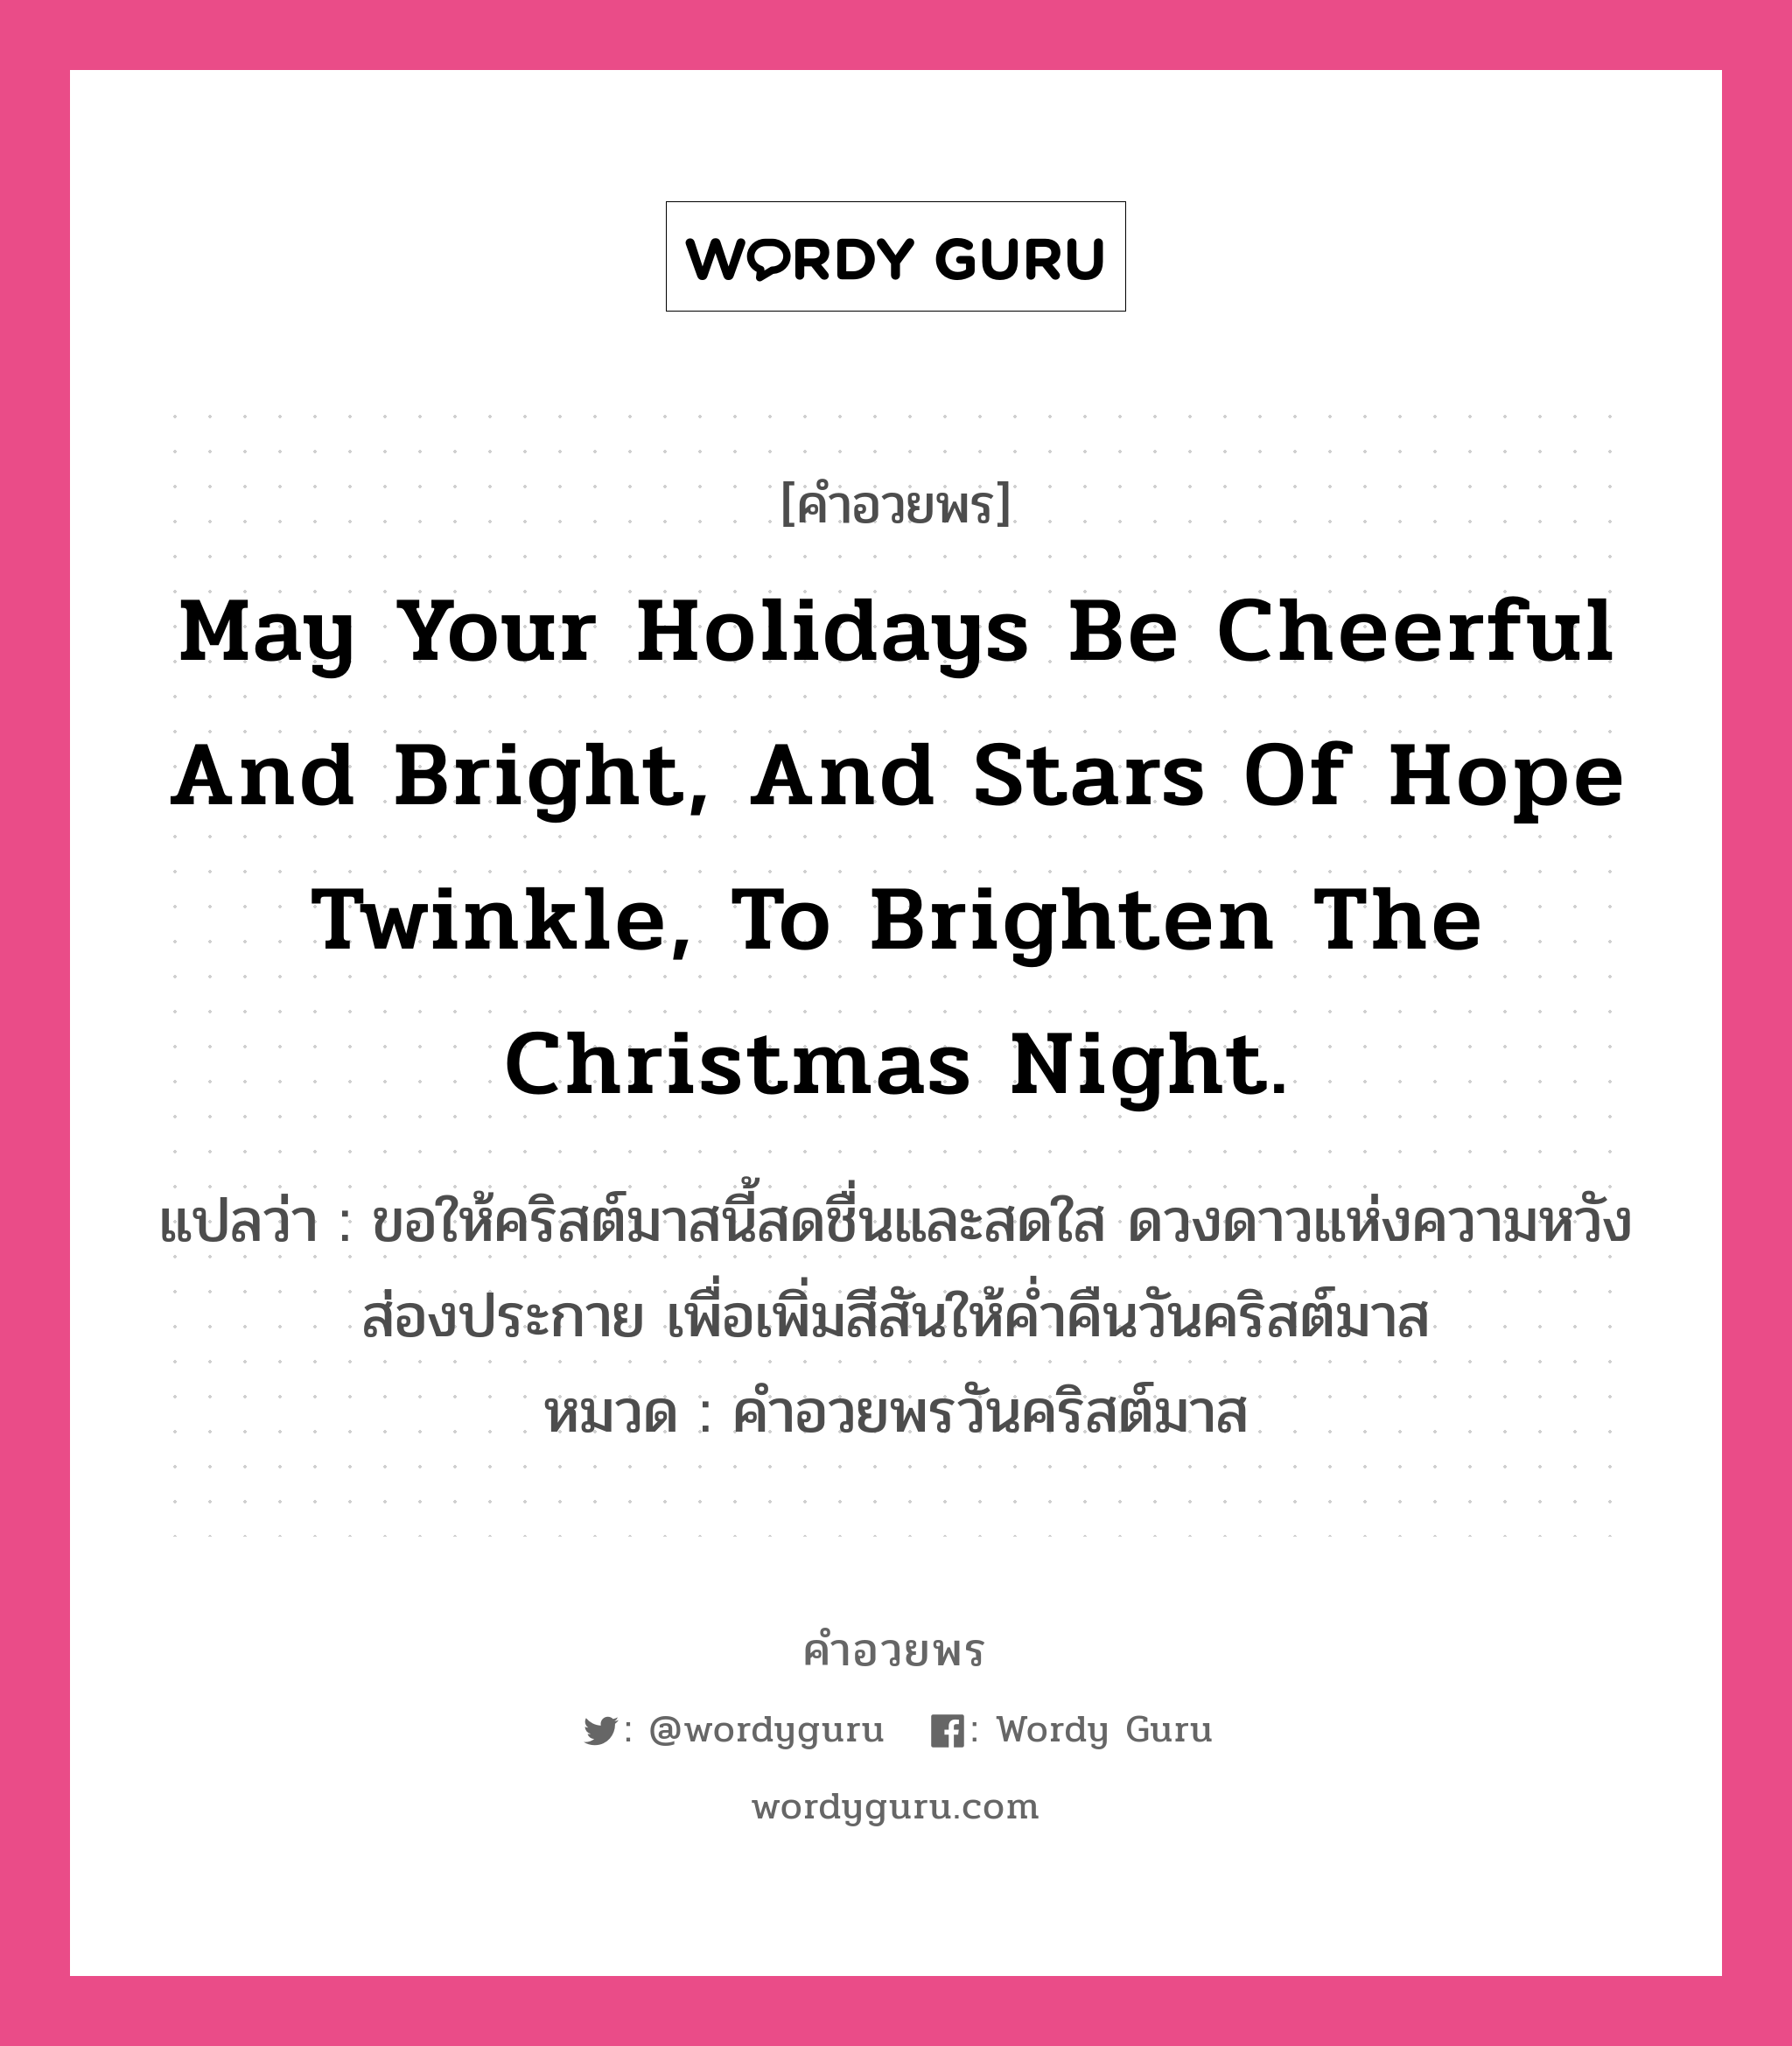 คำอวยพร May your holidays be cheerful and bright, and stars of hope twinkle, to brighten the Christmas night. คืออะไร?, แปลว่า ขอให้คริสต์มาสนี้สดชื่นและสดใส ดวงดาวแห่งความหวังส่องประกาย เพื่อเพิ่มสีสันให้ค่ำคืนวันคริสต์มาส หมวด คำอวยพรวันคริสต์มาส หมวด คำอวยพรวันคริสต์มาส